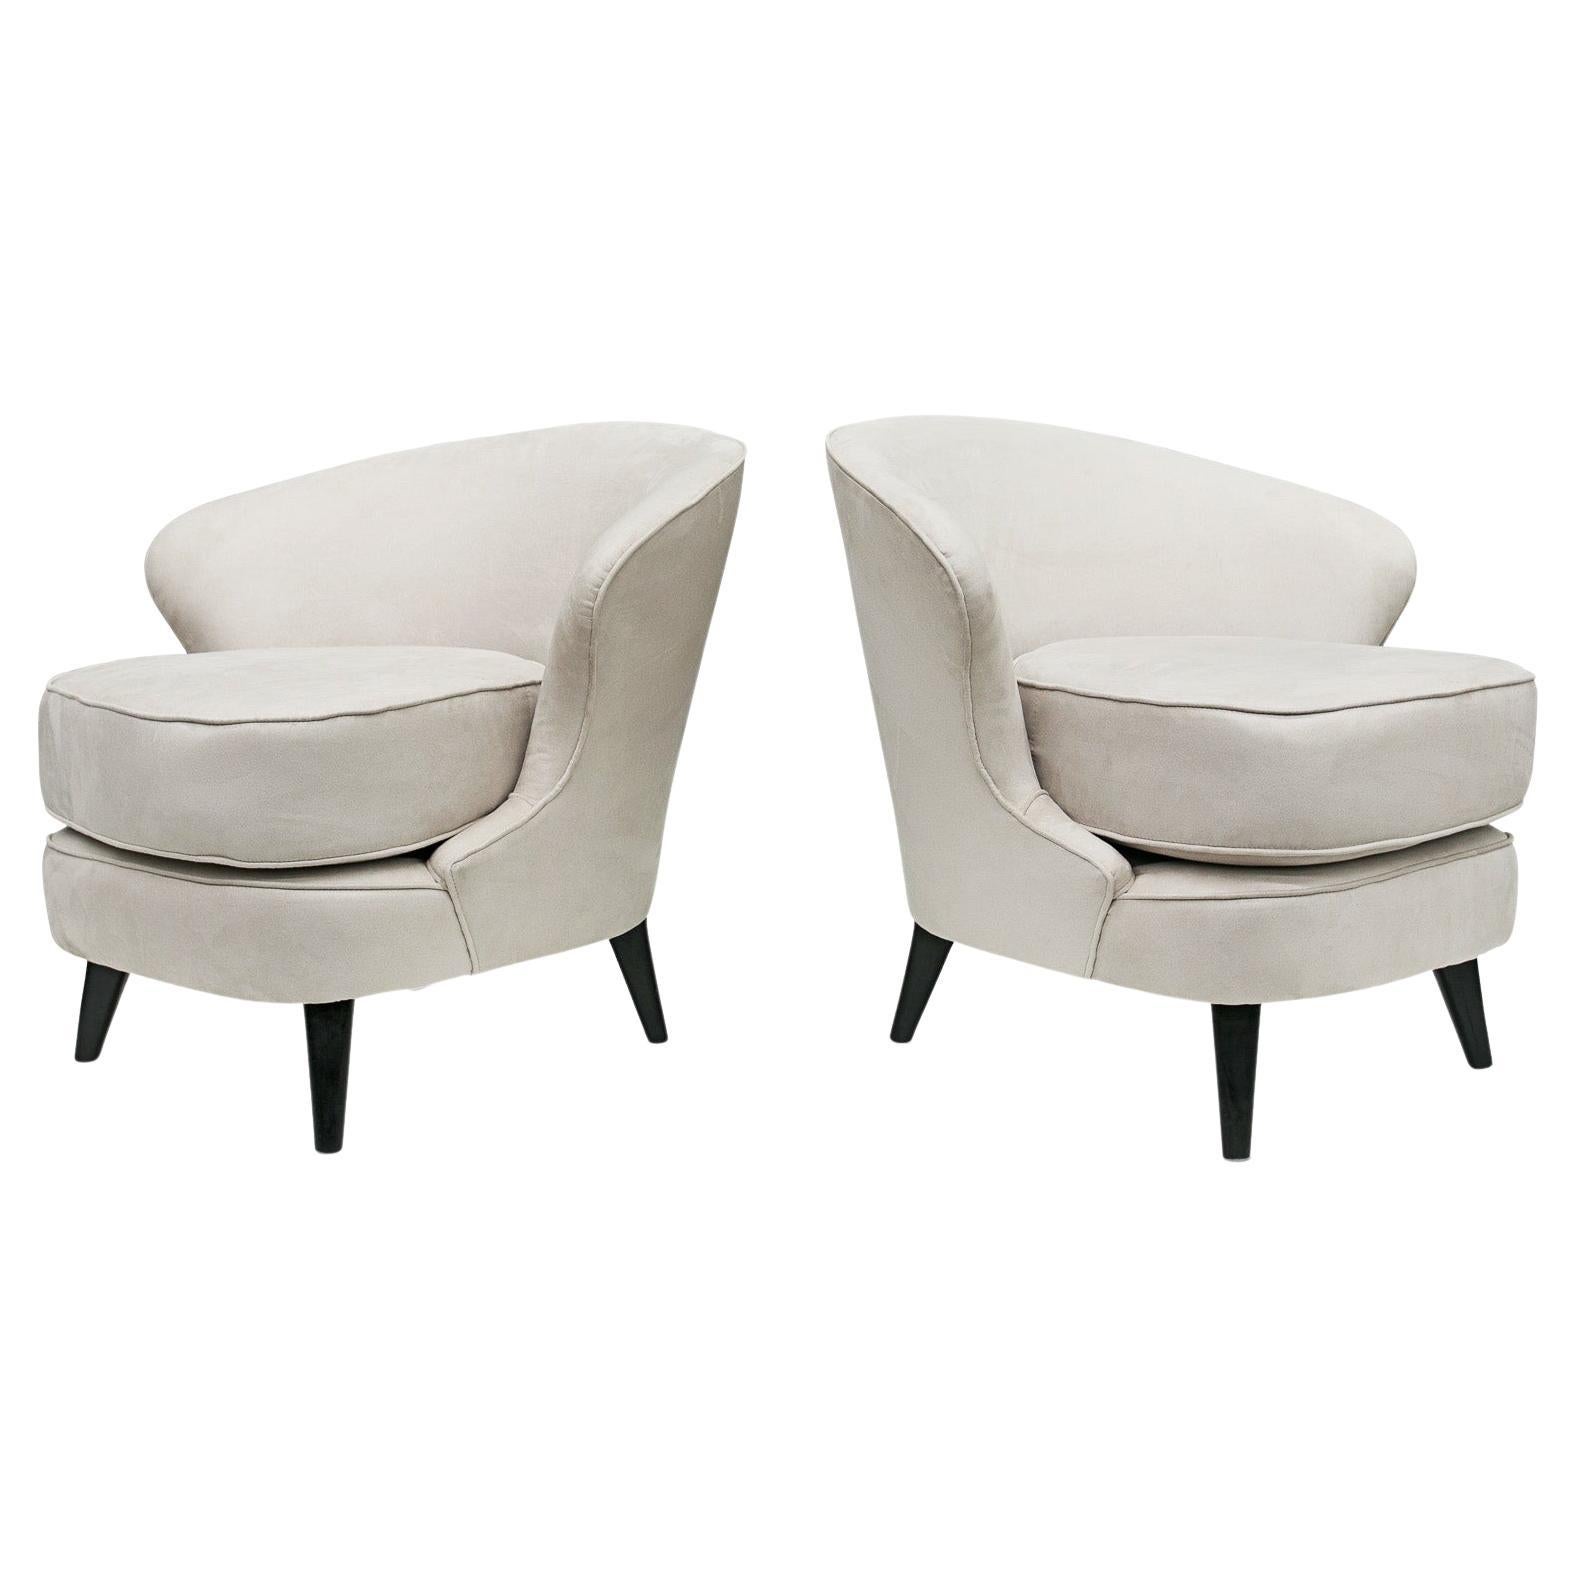 Dieses sehr moderne brasilianische Sesselpaar aus Hartholz und grauem Wildleder, das Joaquim Tenreiro in den sechziger Jahren entwarf, ist jetzt erhältlich. Es ist wunderschön!
 
Das Modell heißt 